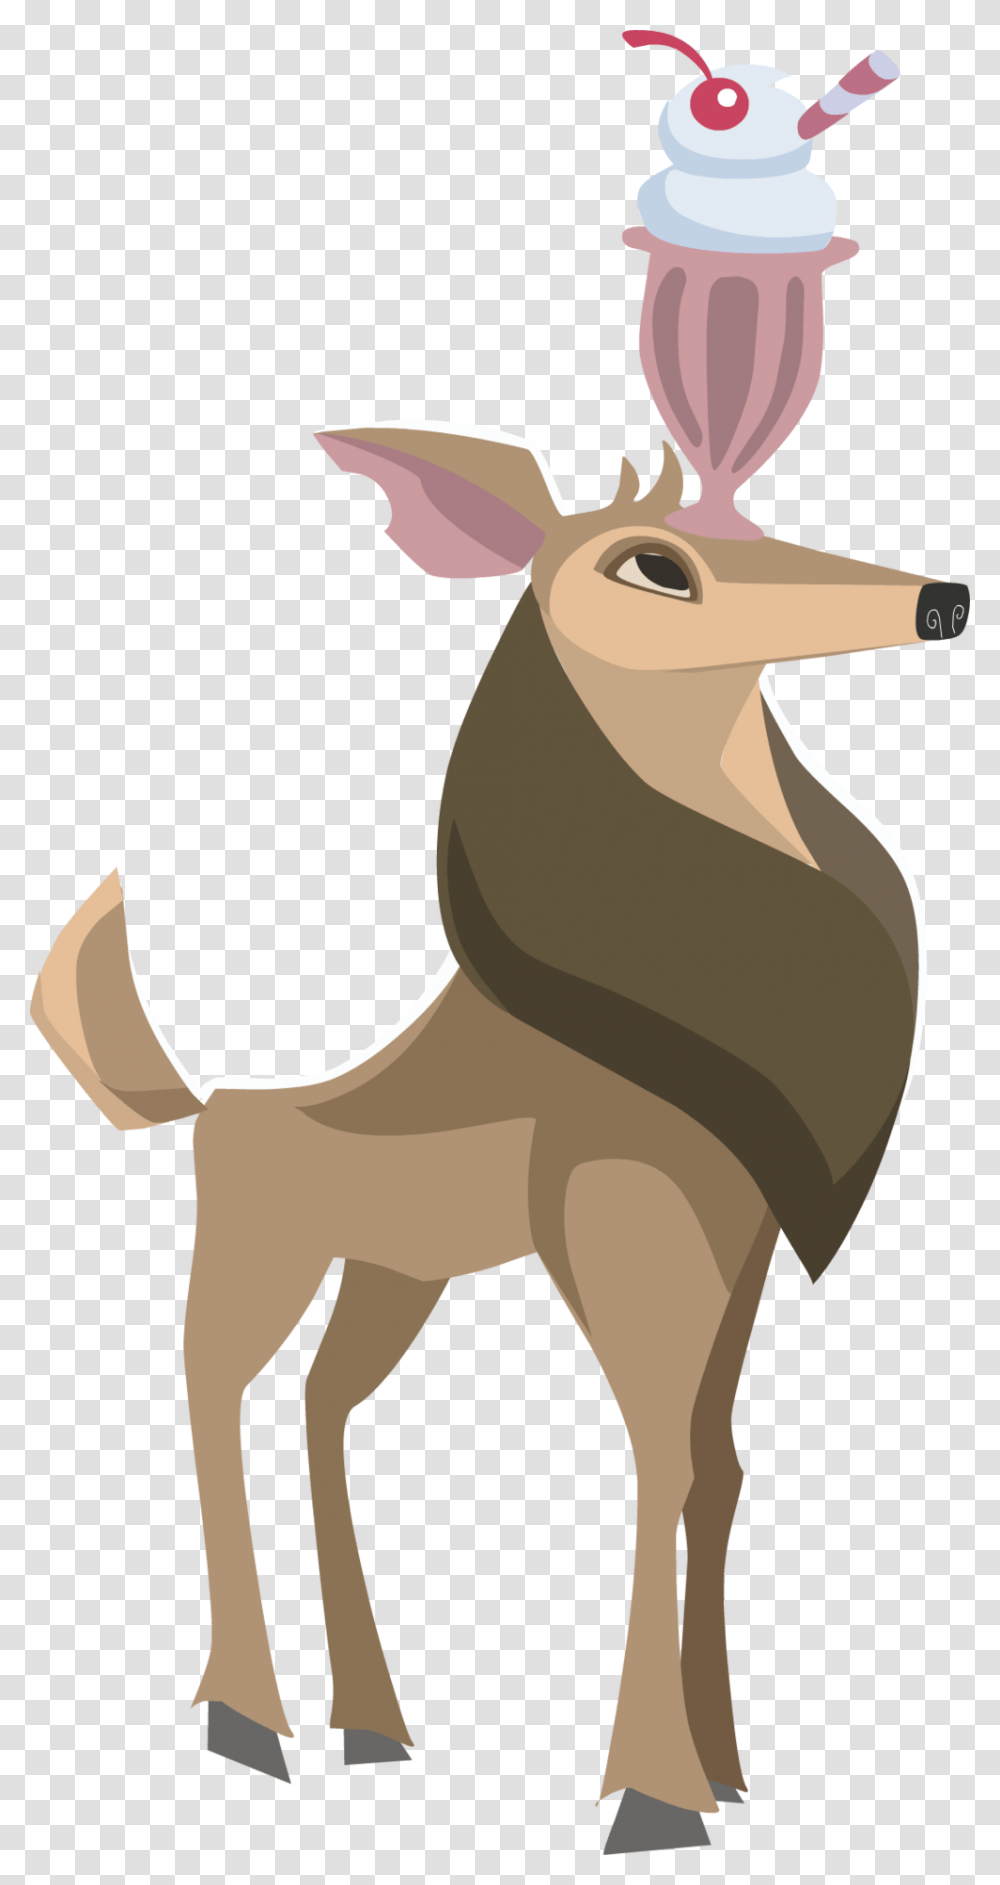 Deer, Mammal, Animal, Wildlife, Antelope Transparent Png